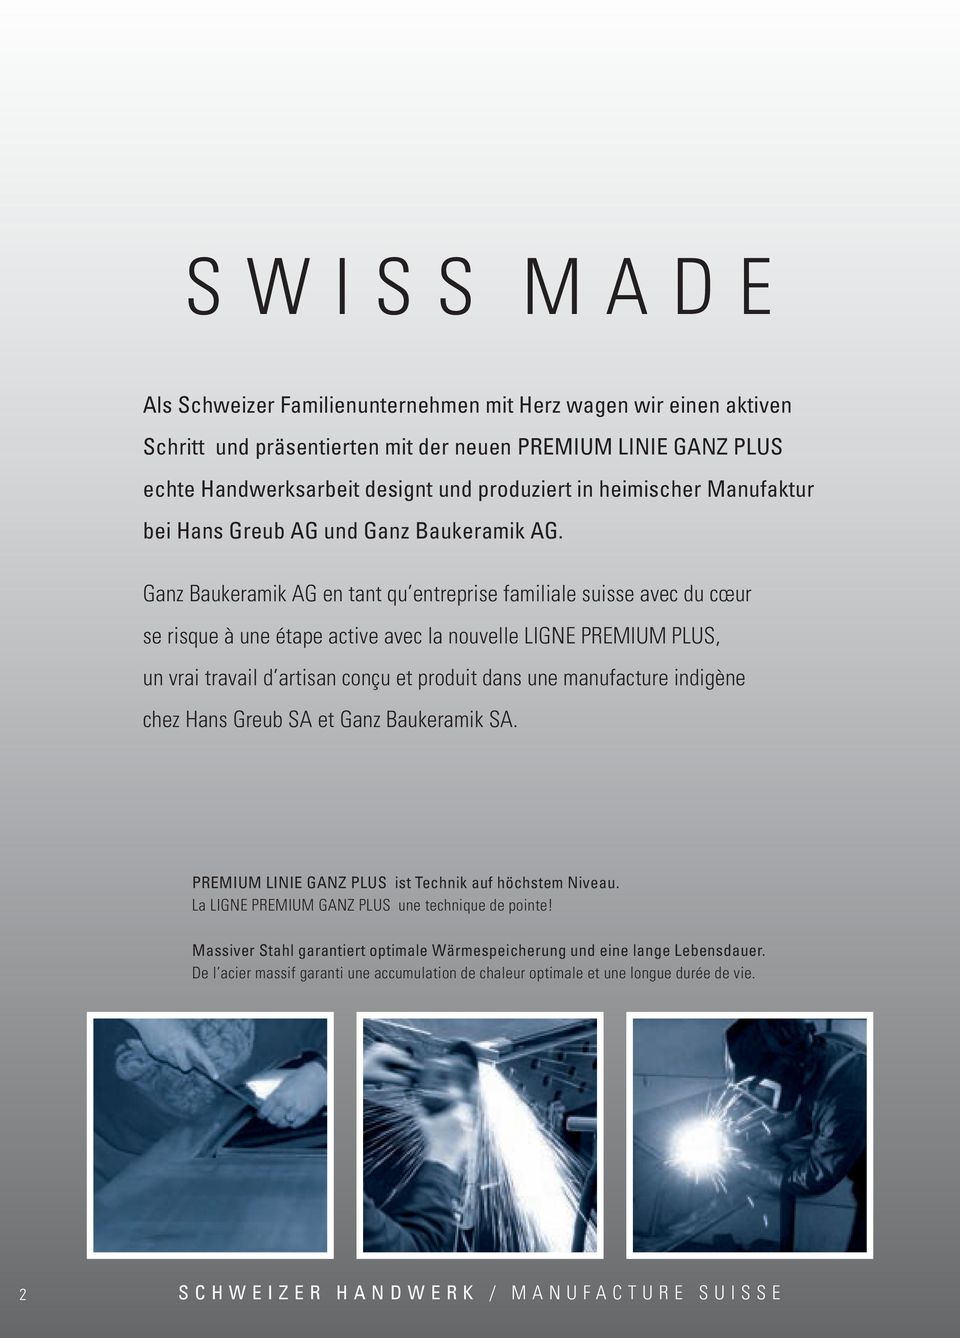 Ganz Baukeramik ag en tant qu entreprise familiale suisse avec du cœur se risque à une étape active avec la nouvelle LIGnE PrEMIuM PLuS, un vrai travail d artisan conçu et produit dans une